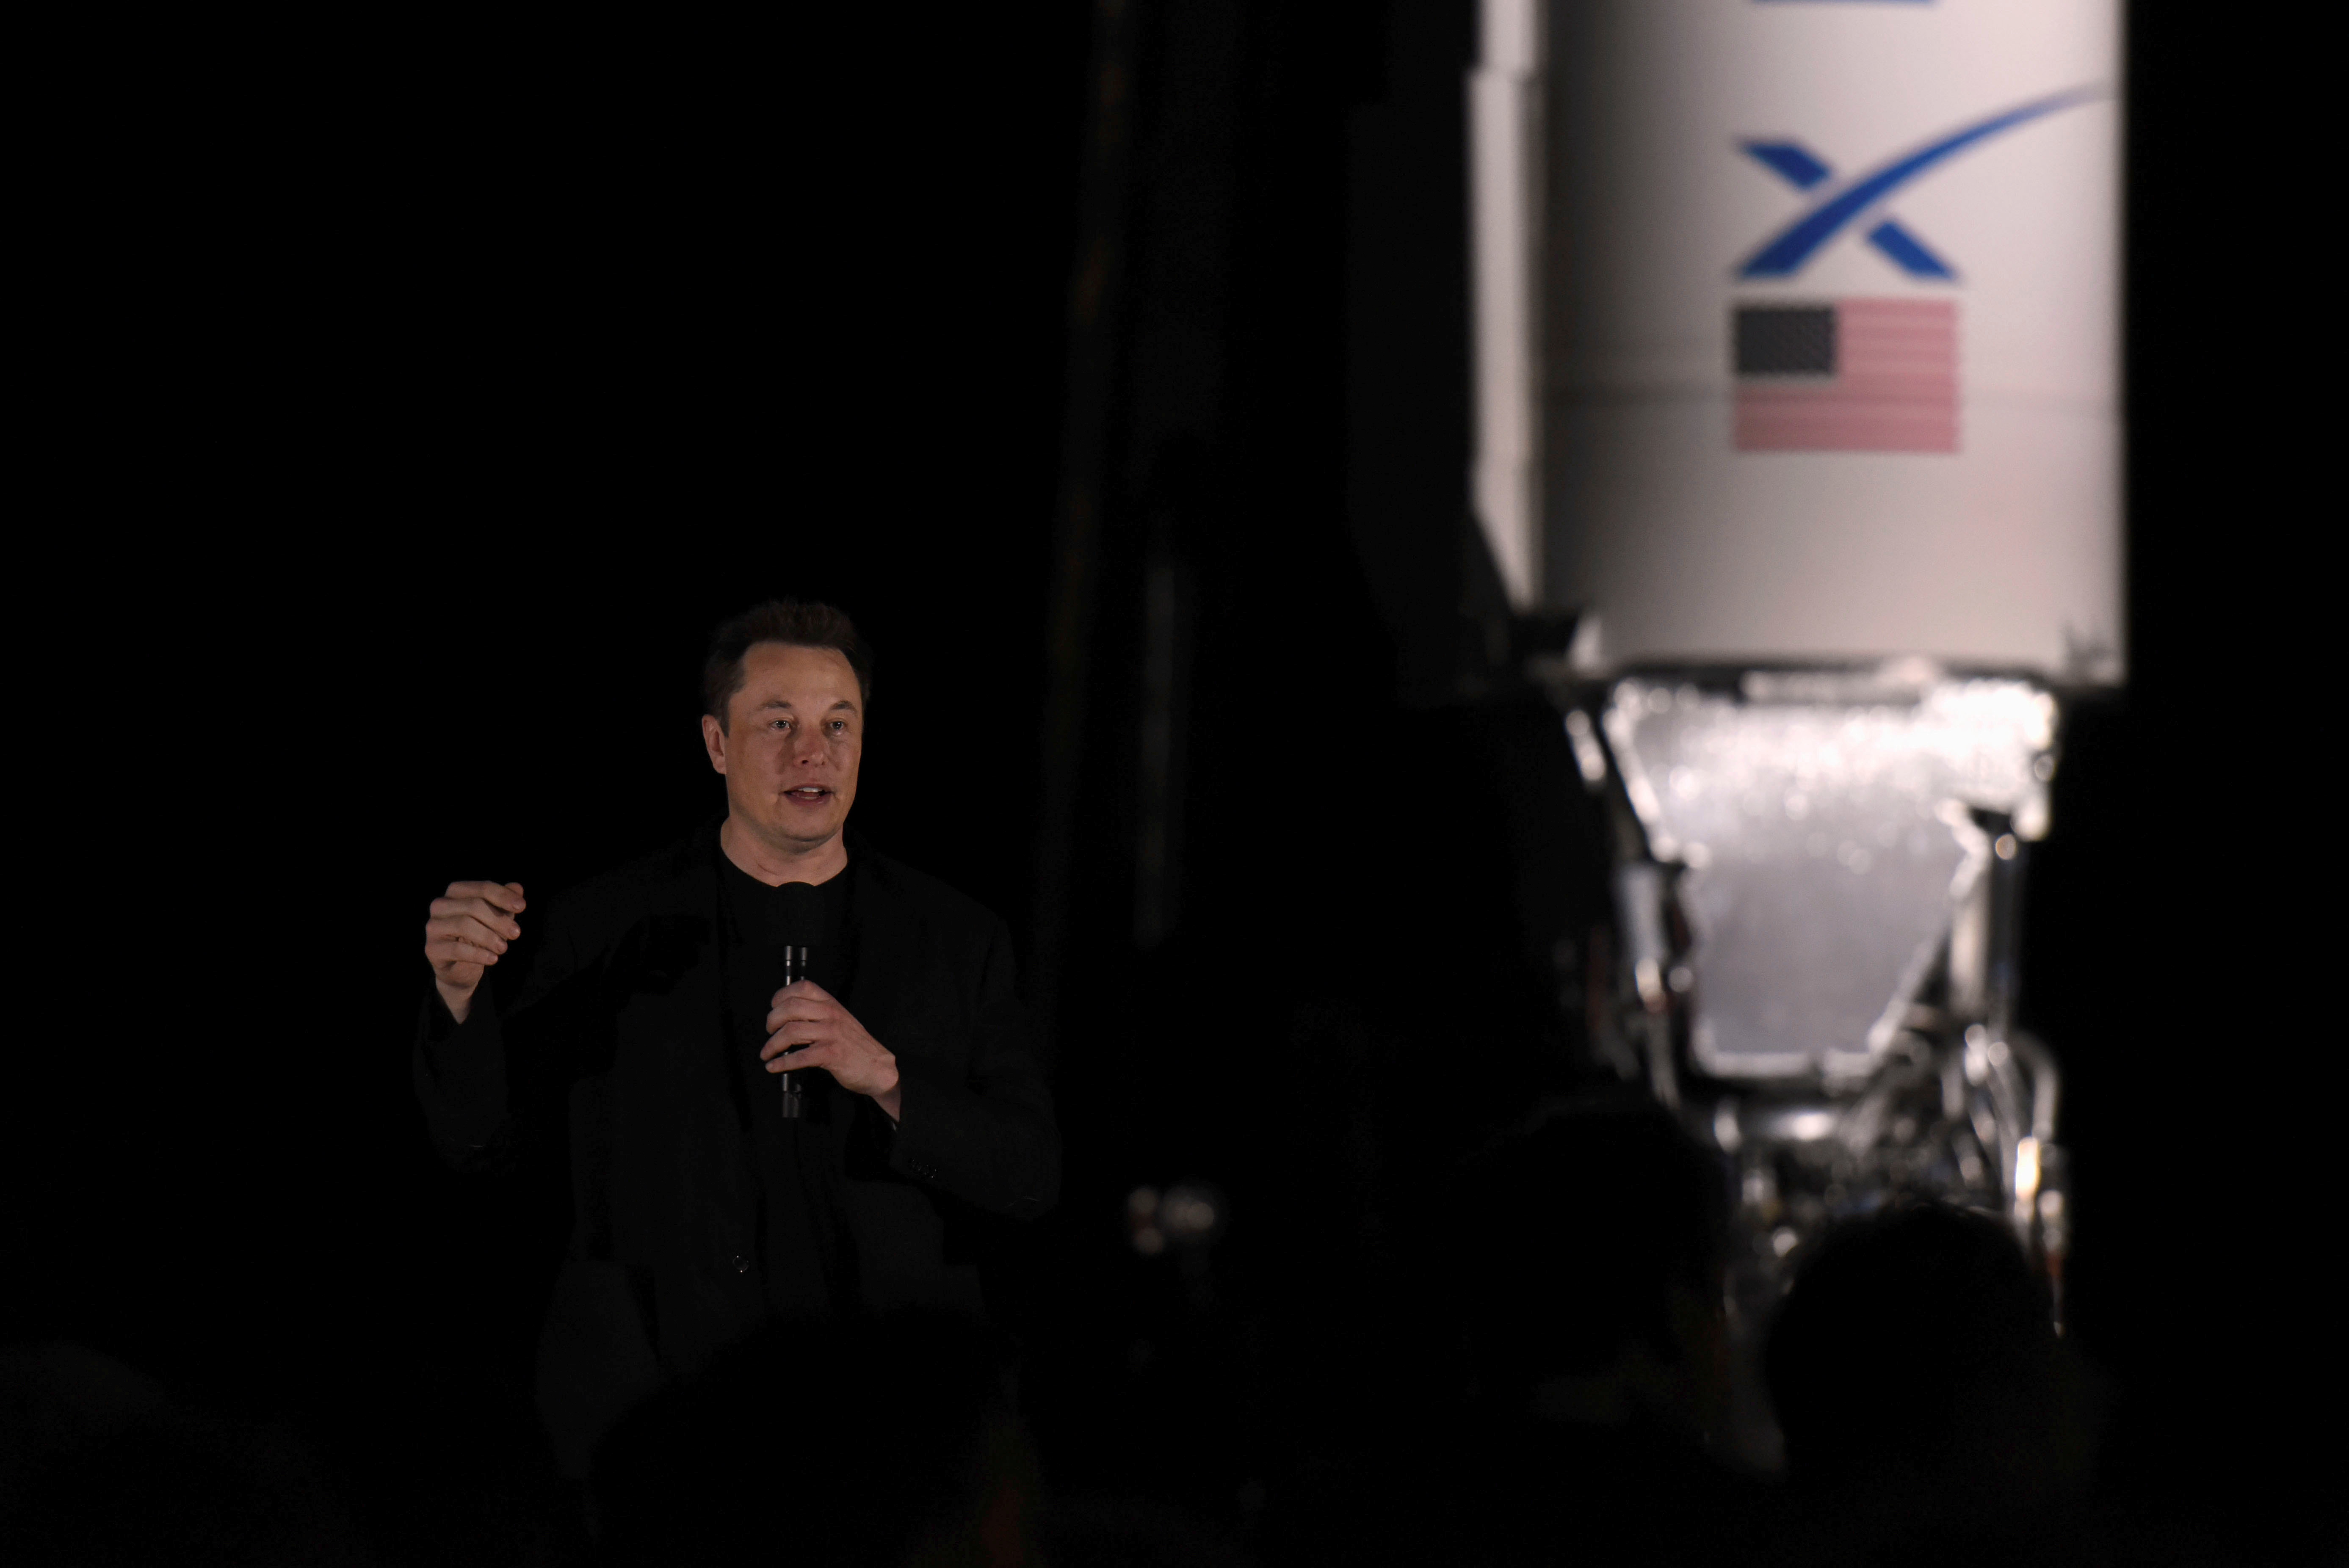 SpaceX çš„åŸƒš†Â©¬æ–å…‹äoŽ 2019 å1 9 æœˆ 28 æ—åœç¾Žå›½å¾å…‹æ–åžåšå¡å‡å¡ä»‹ç»äo†å…¬å¸ç«æ˜Ÿç«ç®-æ˜Ÿ™…žˆ1çš„æœ€æ–æƒ…å†ã€‚REUTERS/Callaghan O'Hare